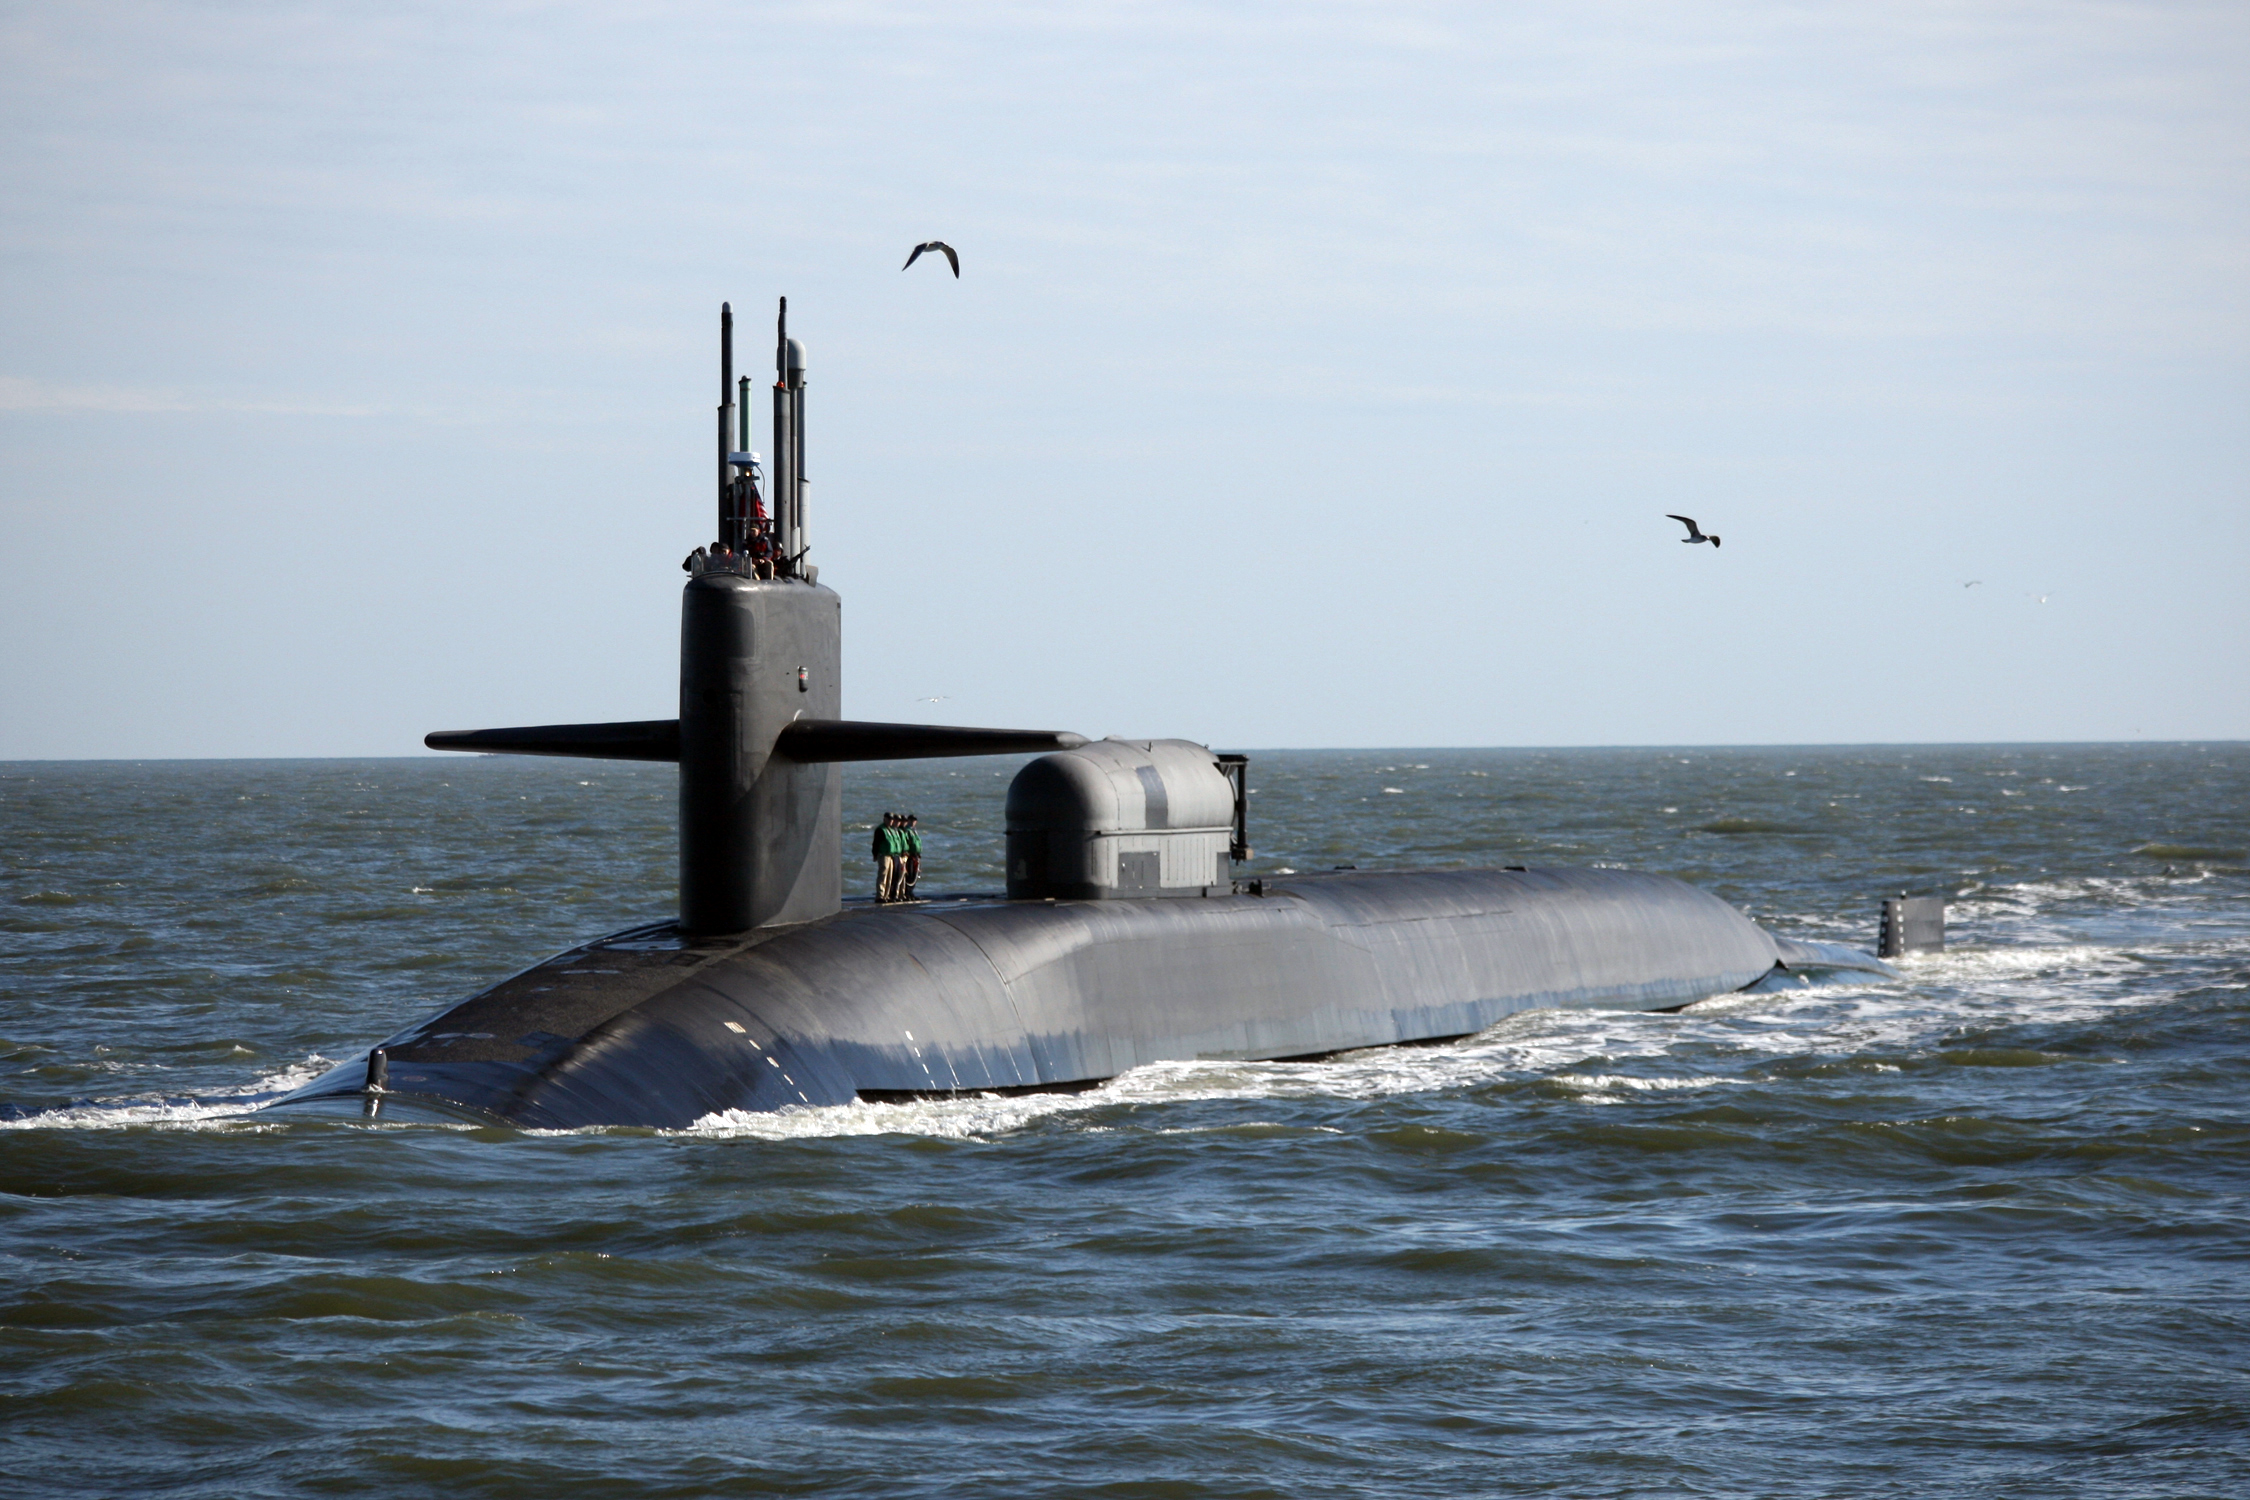 Nel 2022, gli Stati Uniti raddoppieranno il numero di sottomarini in Gran Bretagna - alcuni sottomarini possono trasportare missili Trident II con testate nucleari